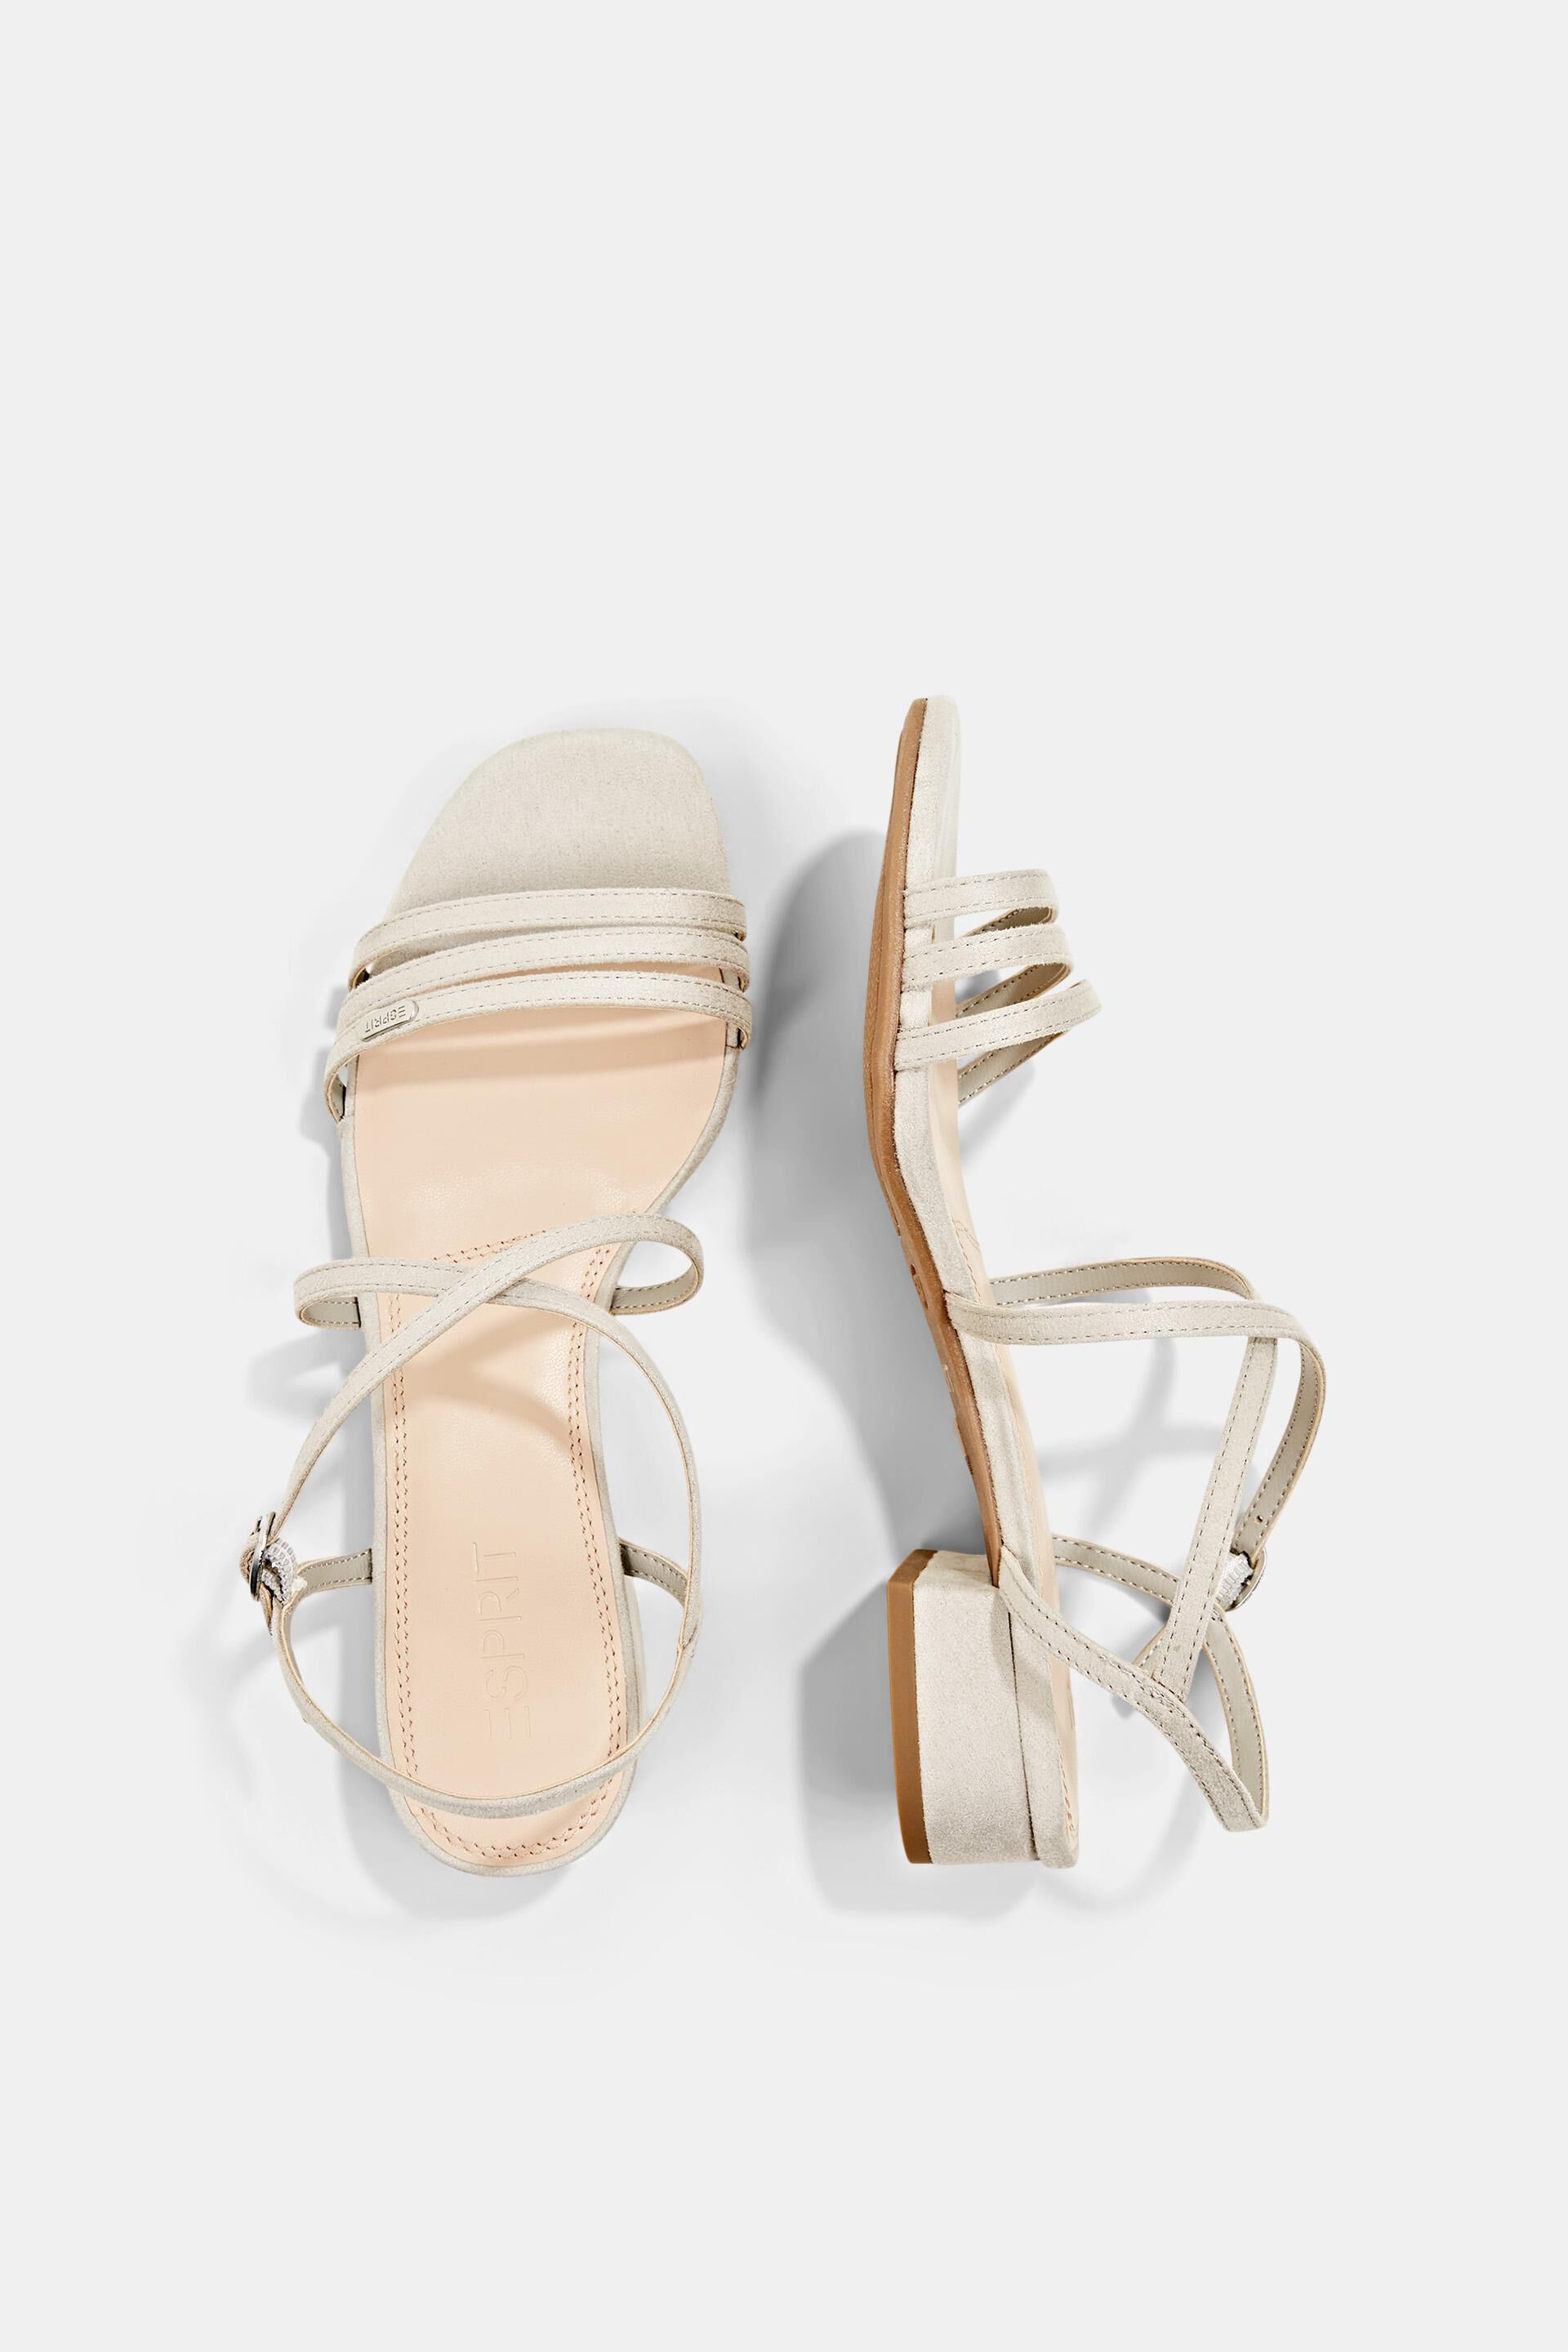 Schoenen Sandalen Sandalen met bandjes Esprit Sandalen met bandjes wit casual uitstraling 